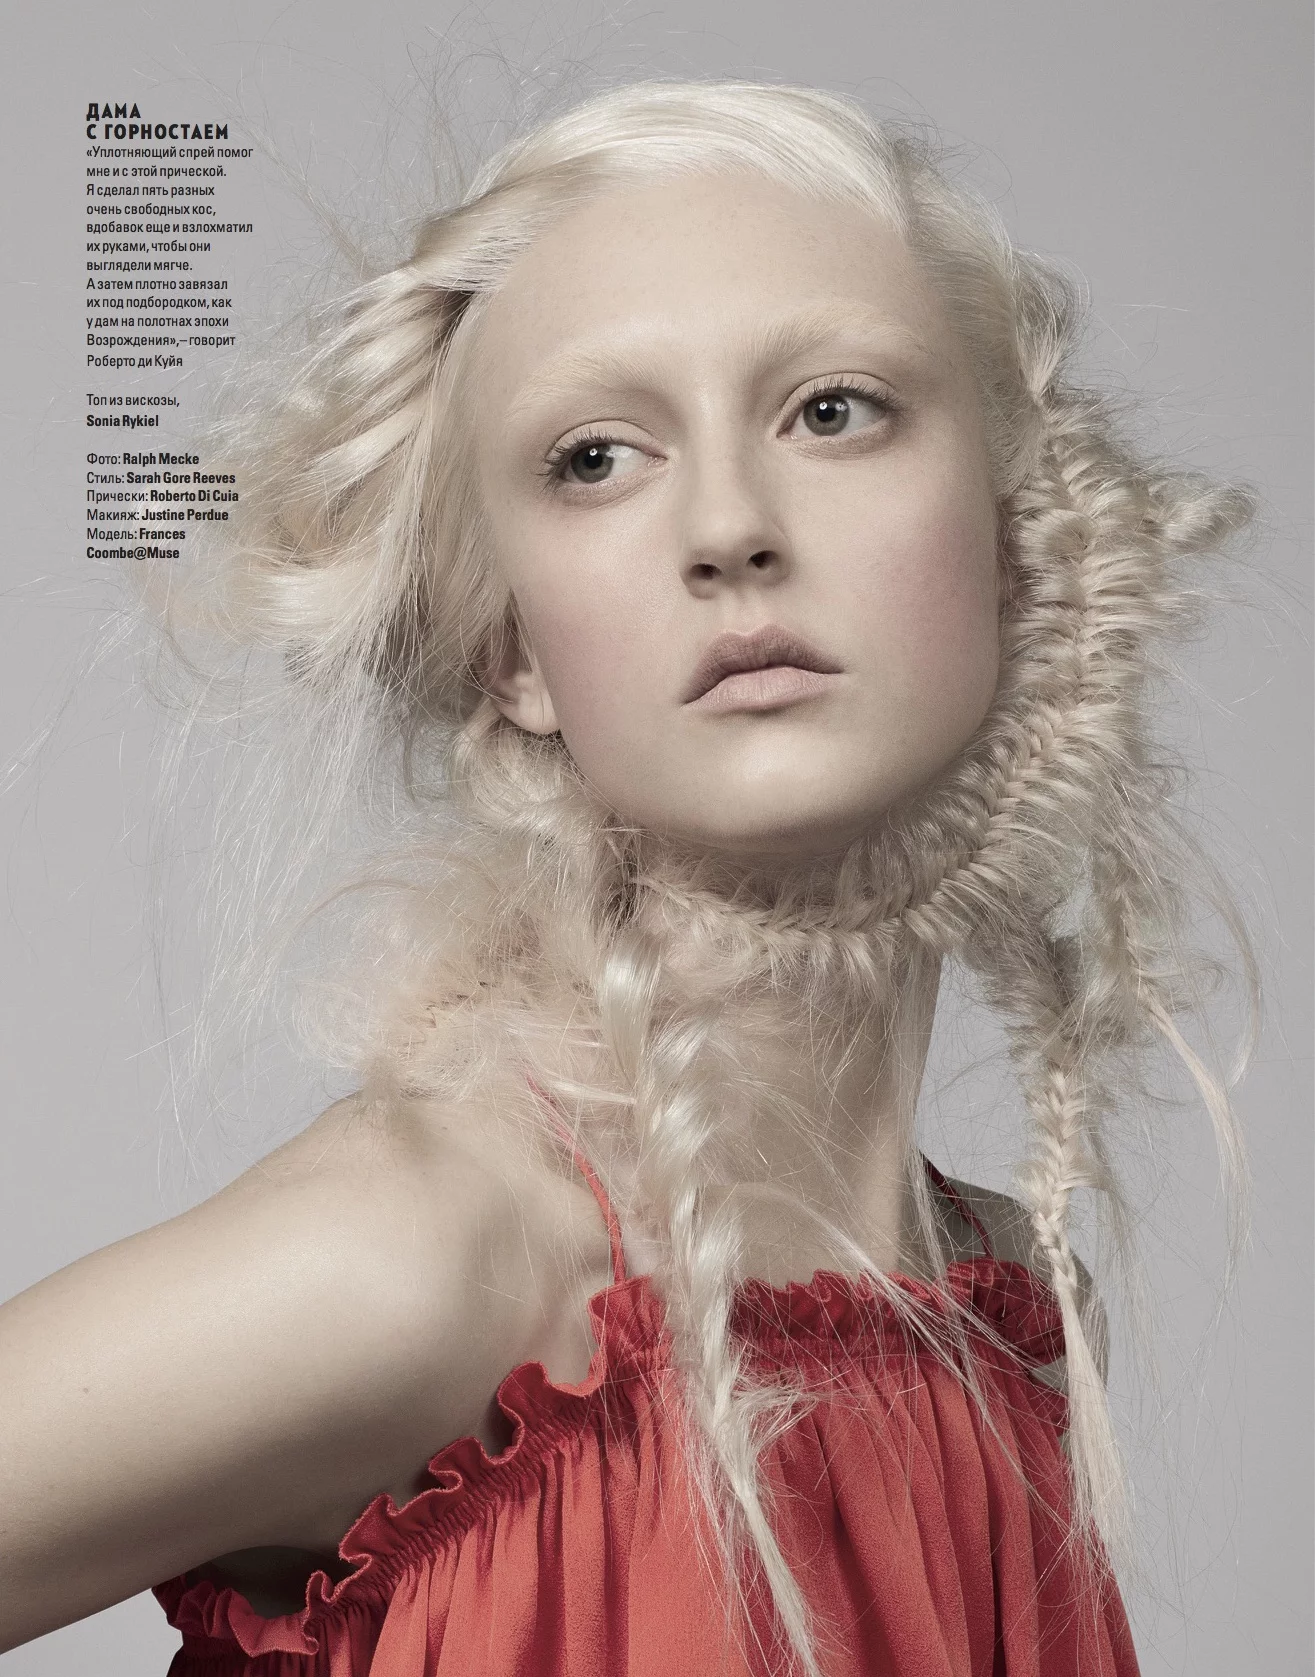 Vogue Ukraine 4 by Ralph MECKE